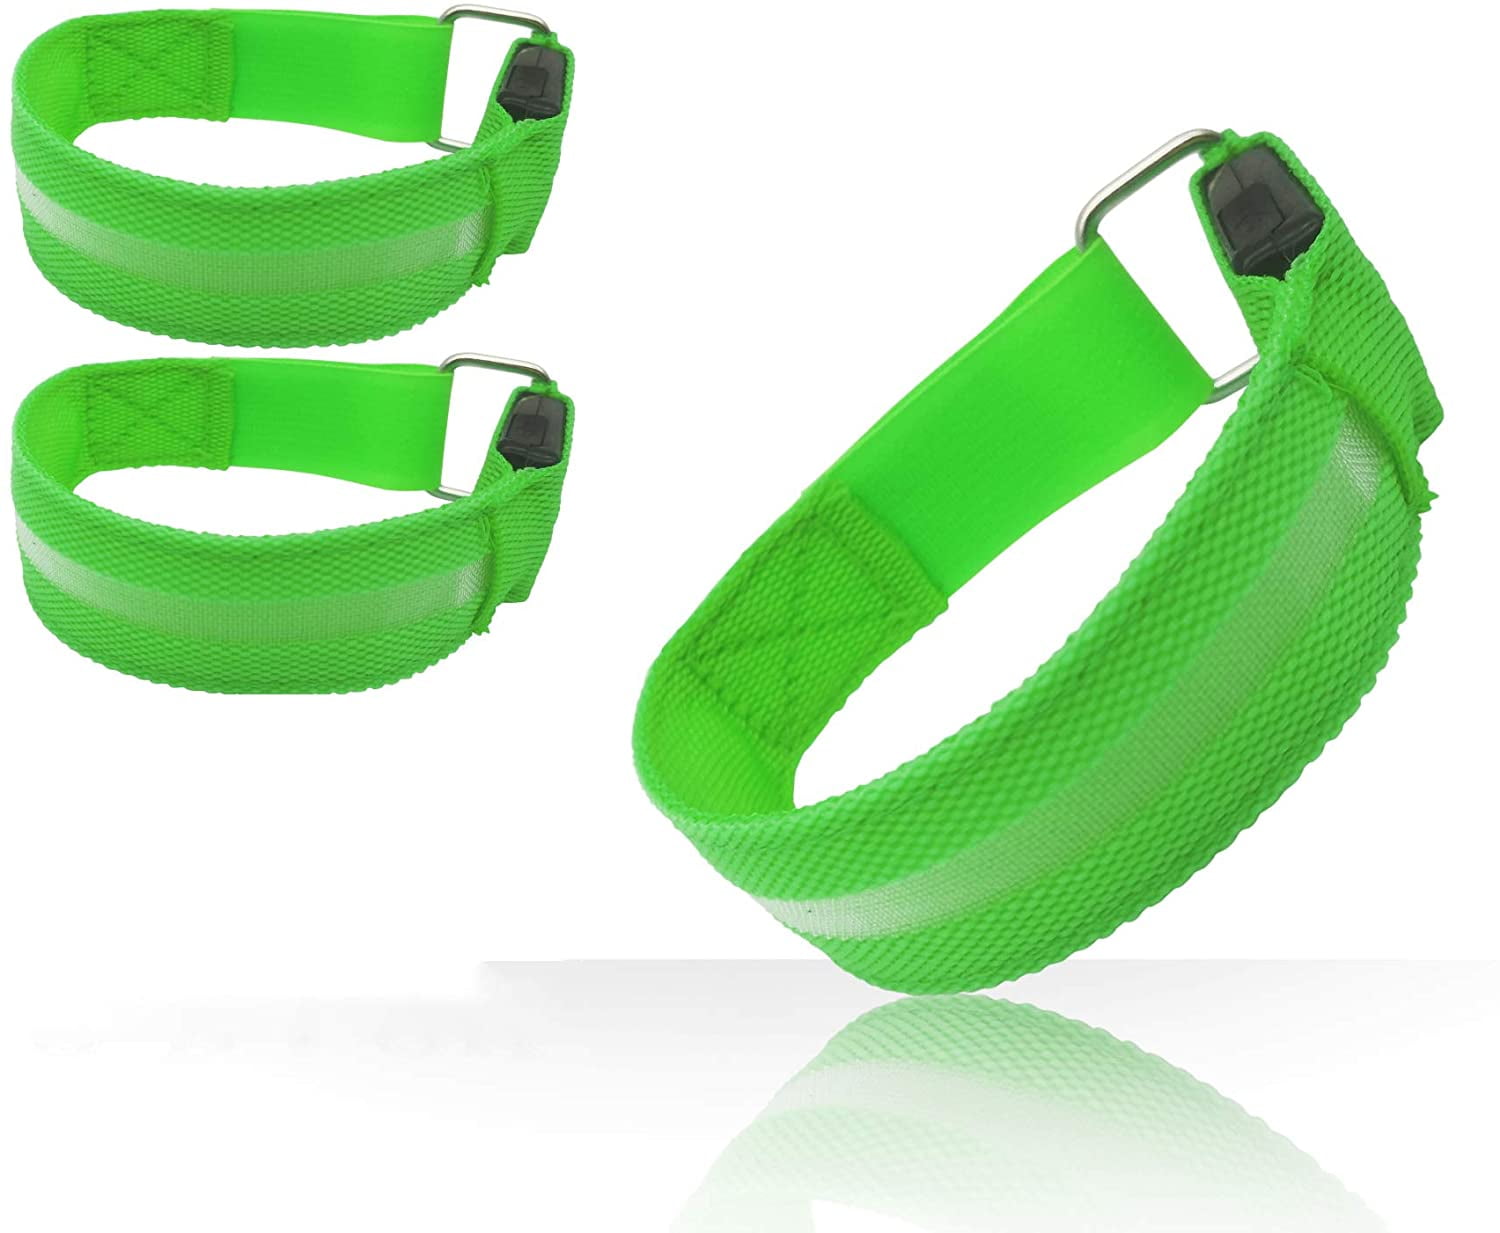 USB LED Flash Light Armband Strap Safety Night Running Nylon Reflective Bracelet 